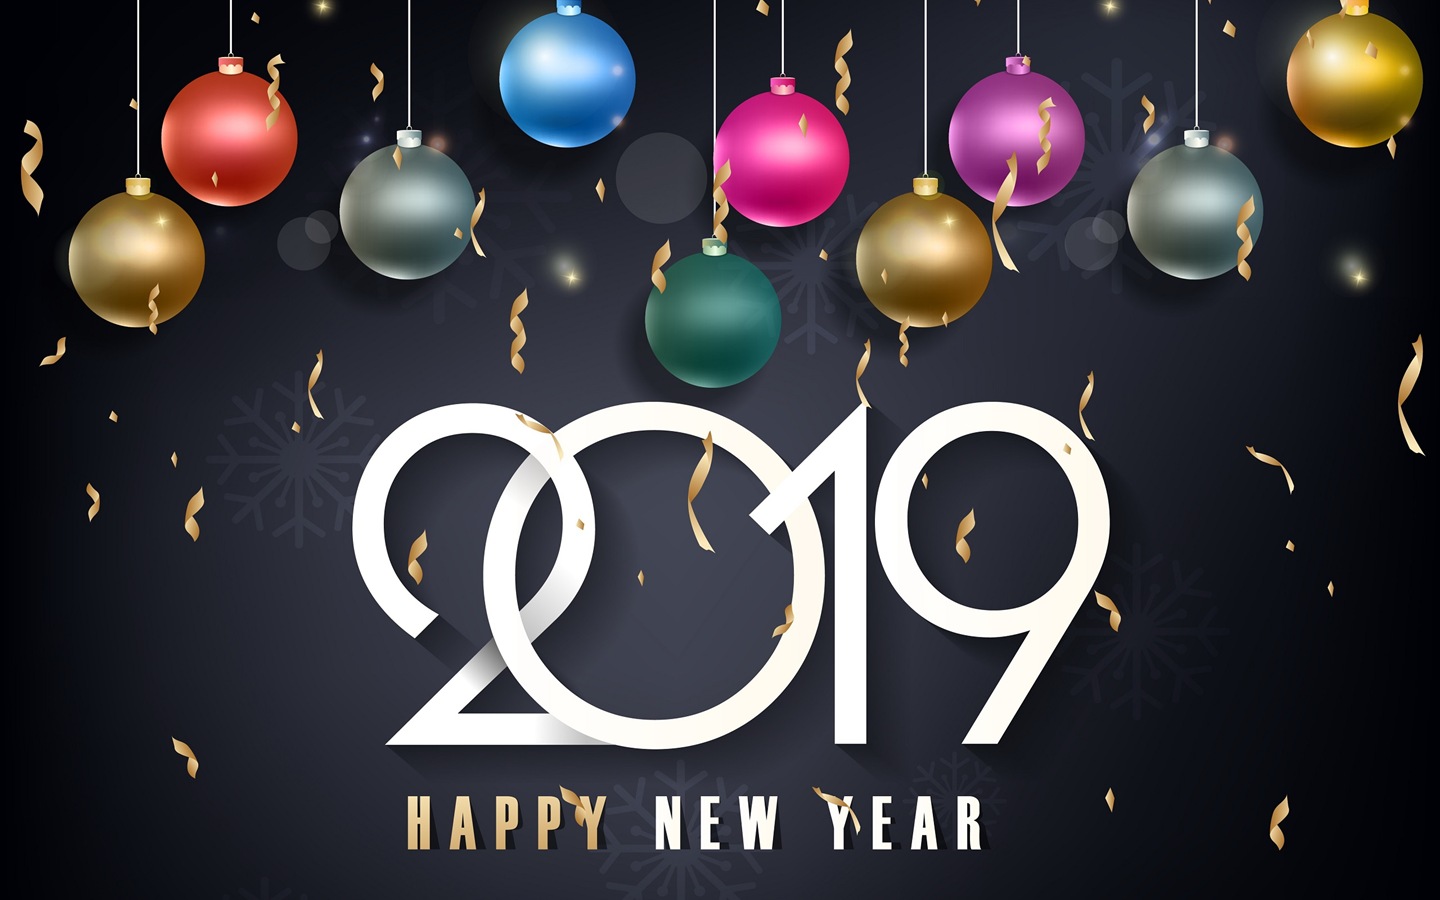 Feliz año nuevo 2019 HD wallpapers #9 - 1440x900